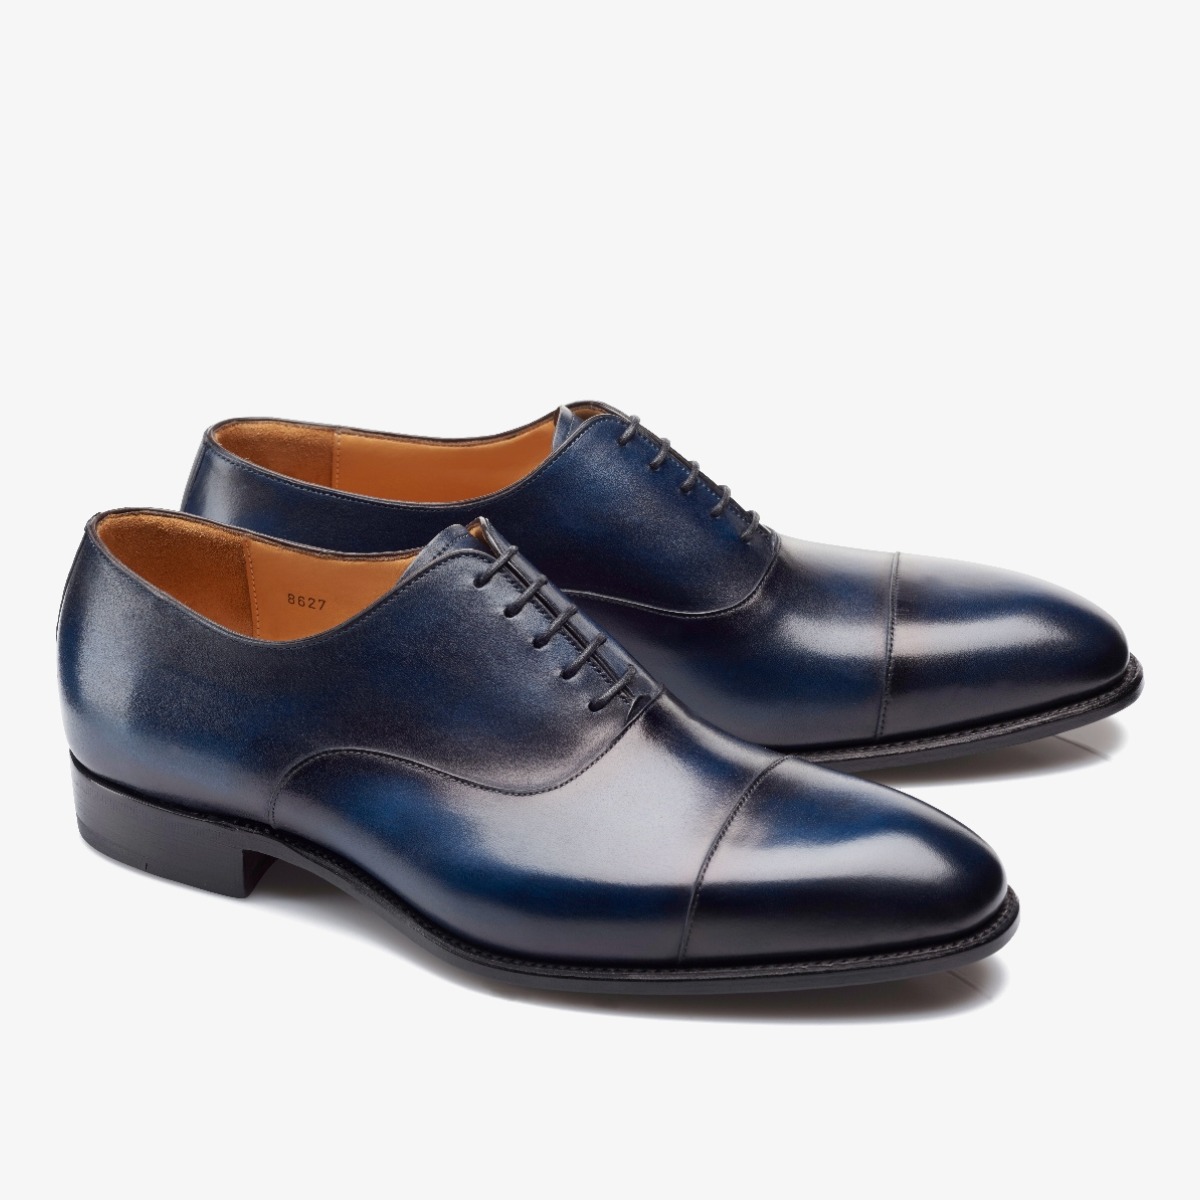 Carlos Santos 8627 Harold blue toe cap men's oxford shoes